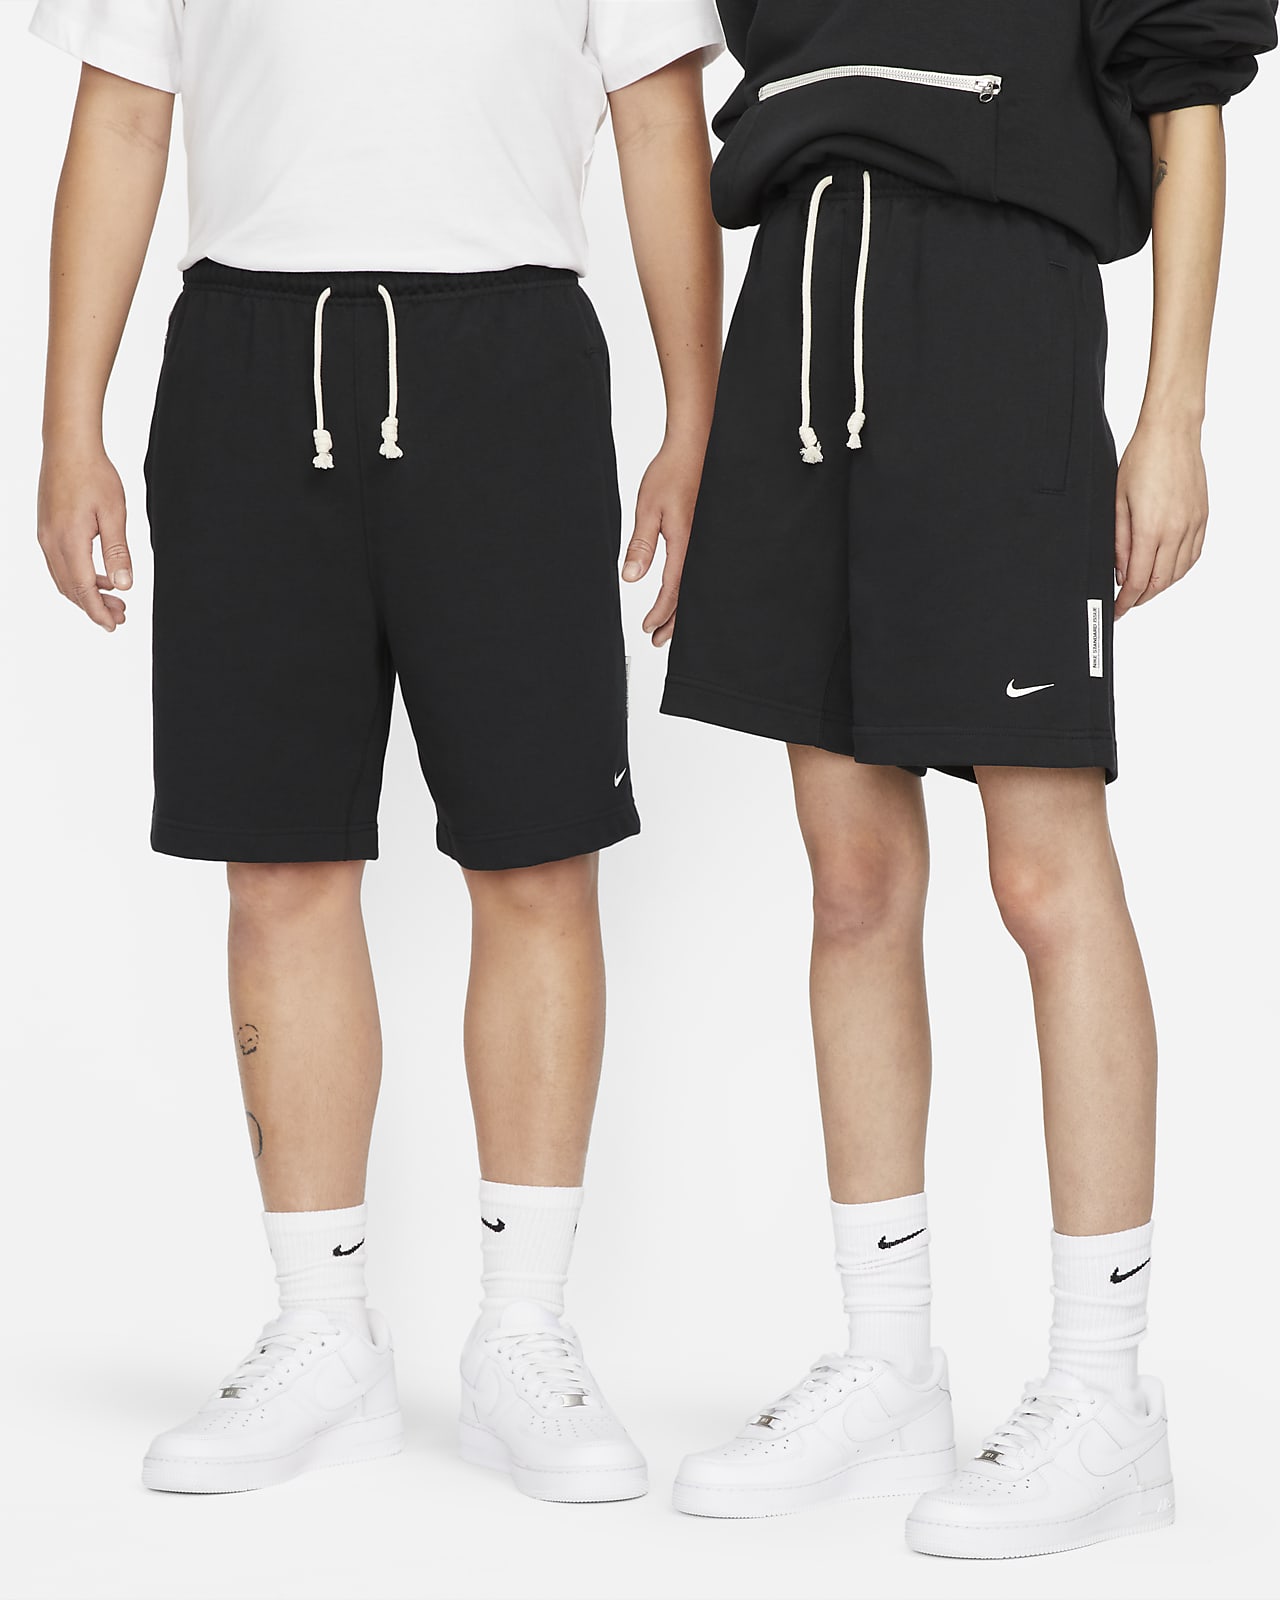 Shorts de básquetbol Dri-FIT de 20 cm para hombre Nike Standard Issue